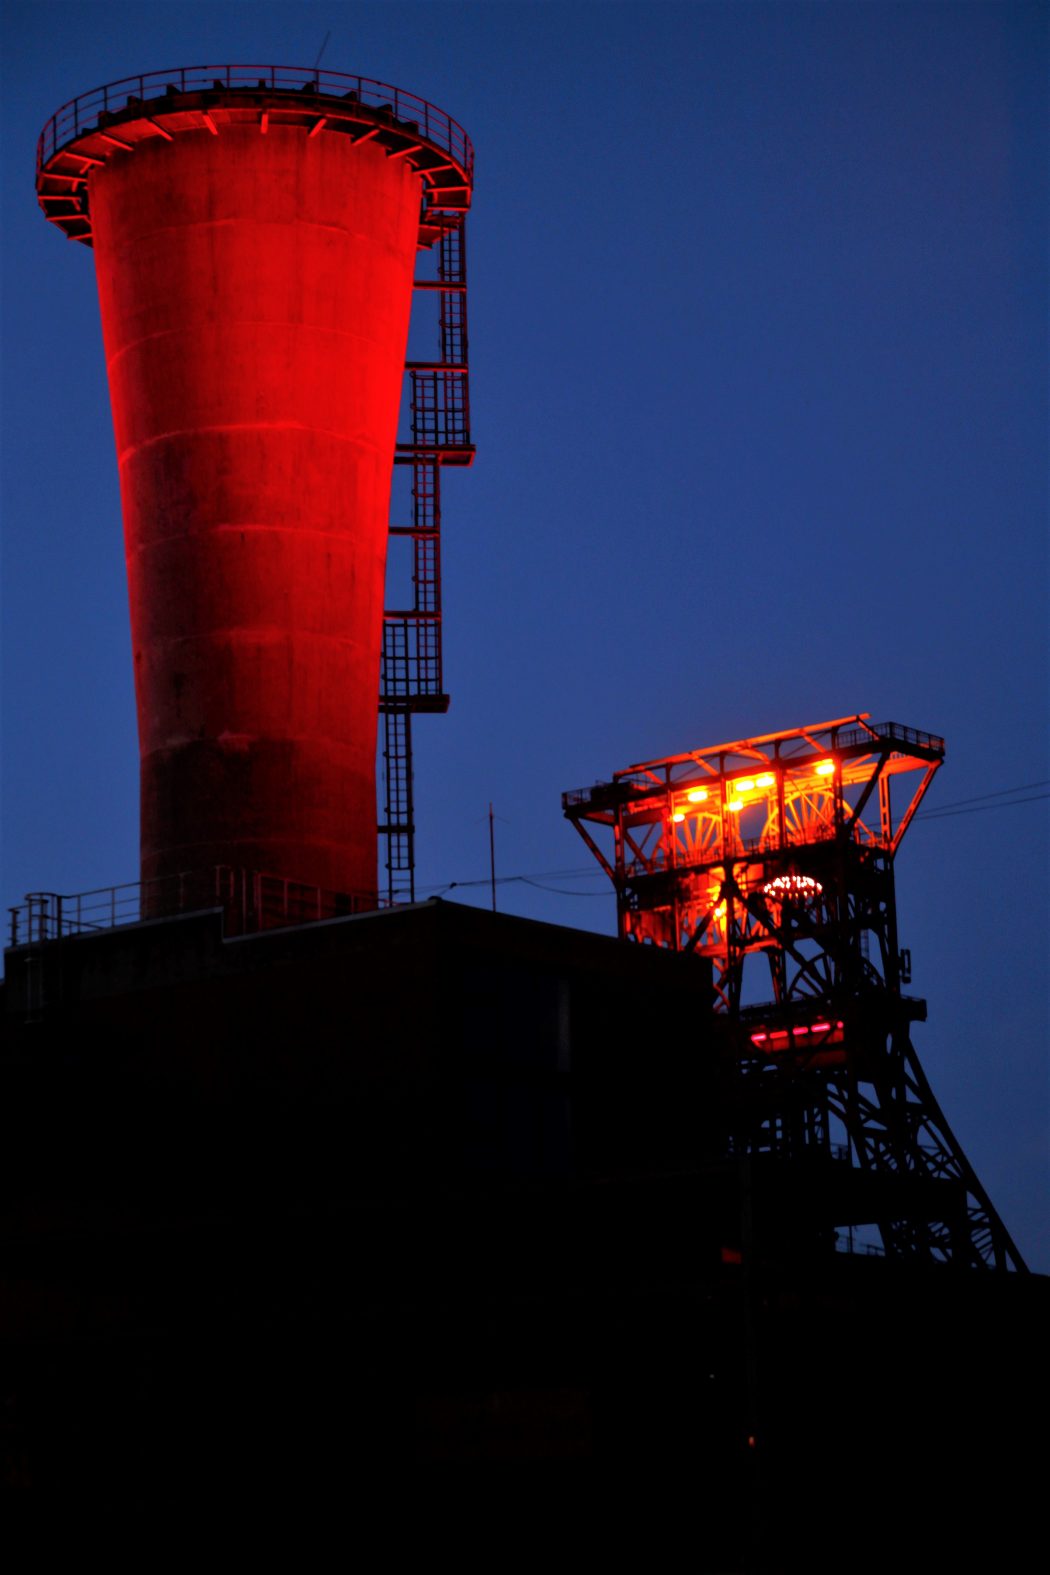 Das Foto zeigt die Zeche Consol in Gelsenkirchen - einen von zahlreichen Fotospots im Ruhrgebiet bei Nacht